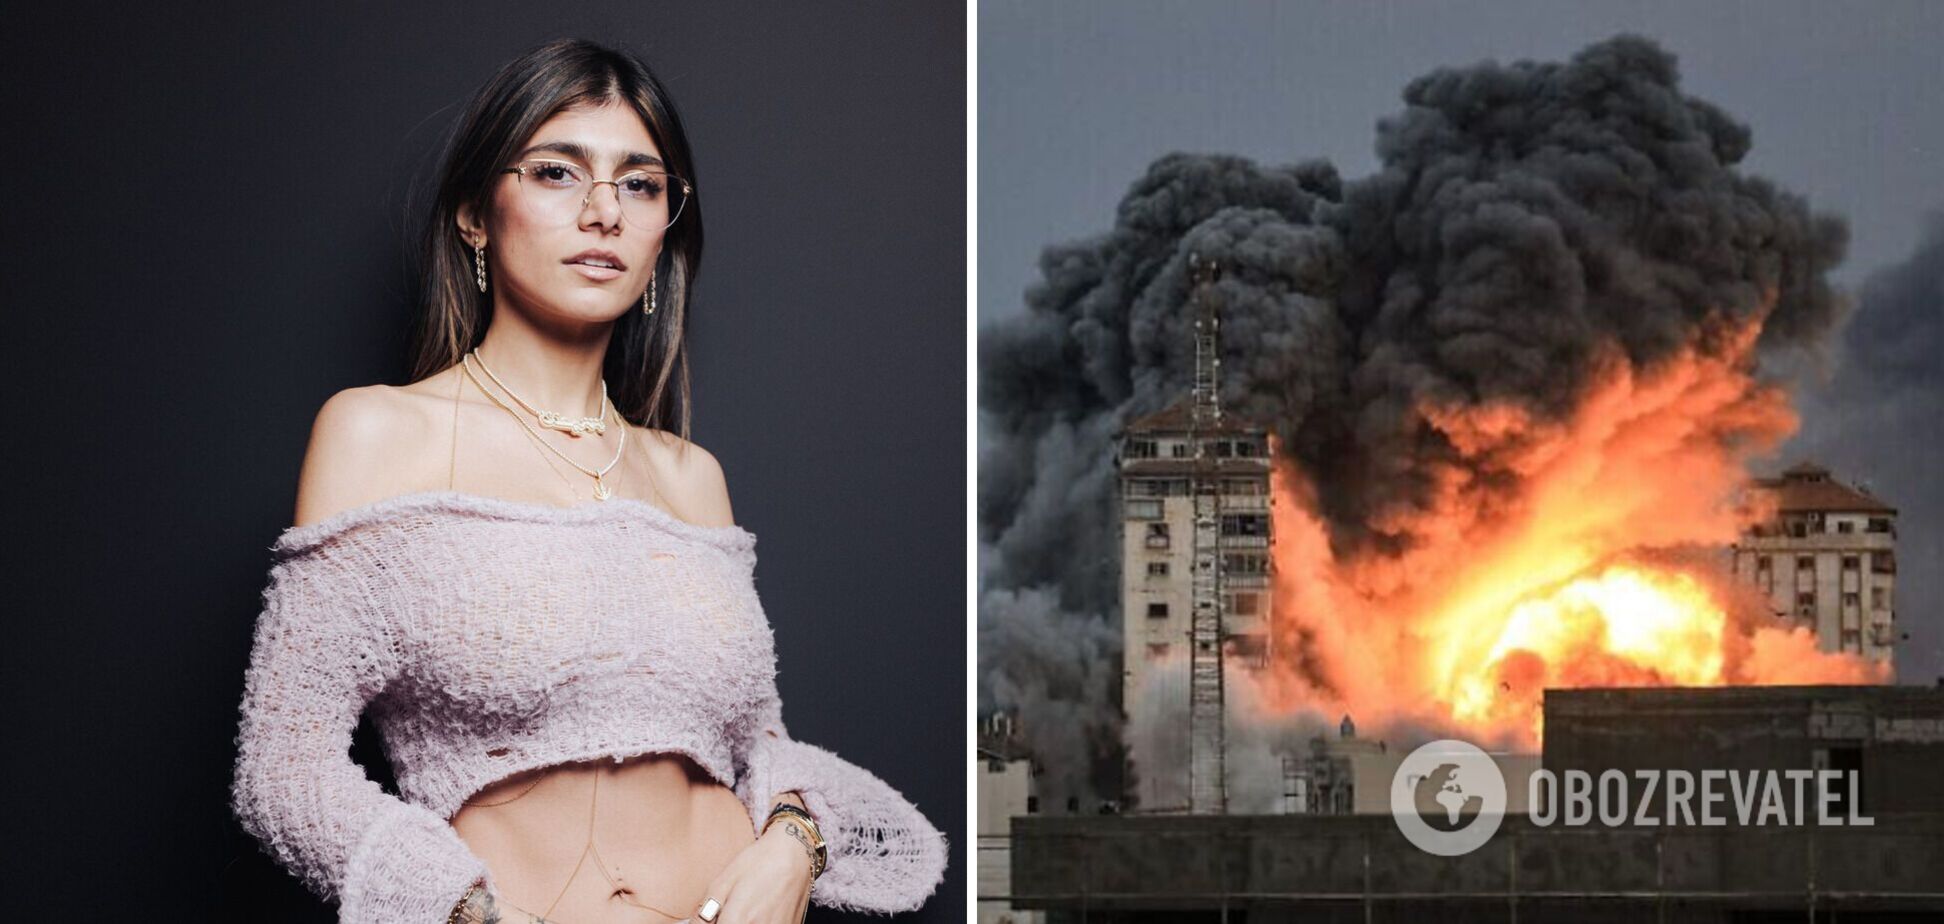 Звезда Playboy Мия Халифа, попавшая в скандал из-за поддержки ХАМАС, сравнила Украину с Палестиной